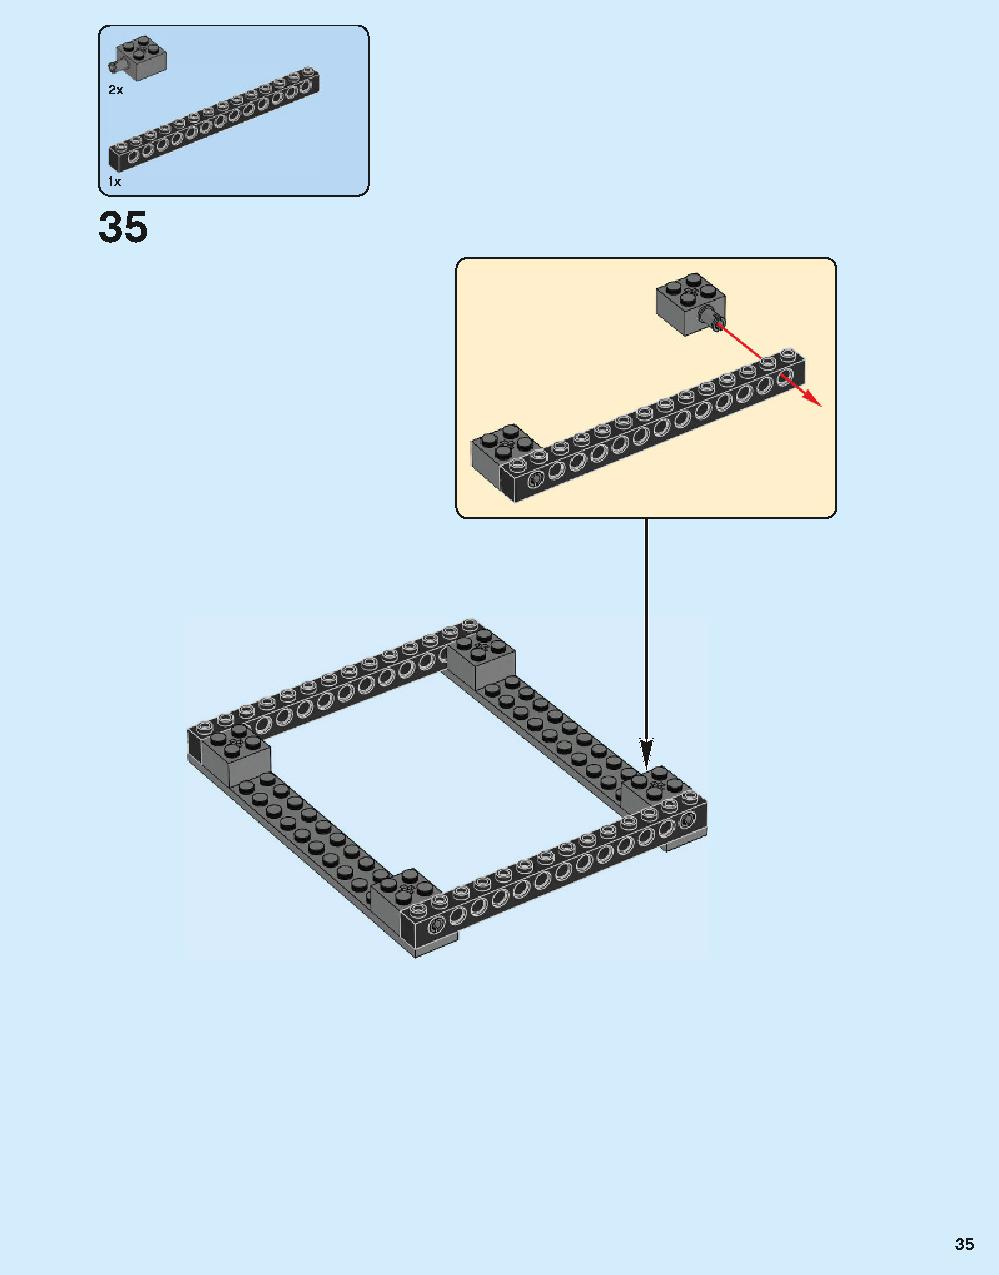 ホグワーツ城 71043 レゴの商品情報 レゴの説明書・組立方法 35 page